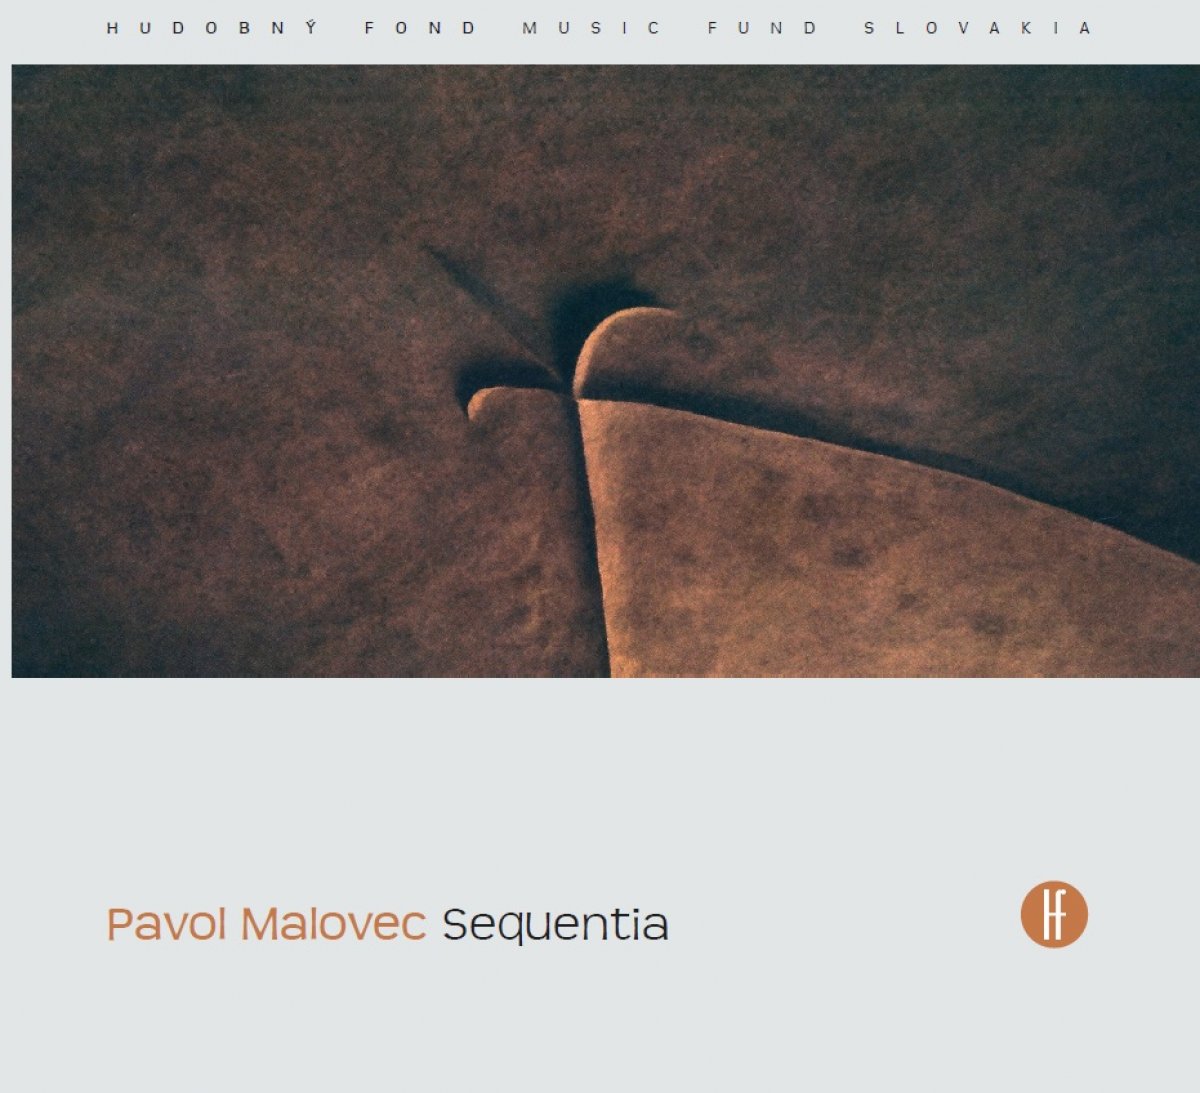 Album Sequentia skladateľa Pavla Malovca otvára poslucháčovi svet duchovných hodnôt